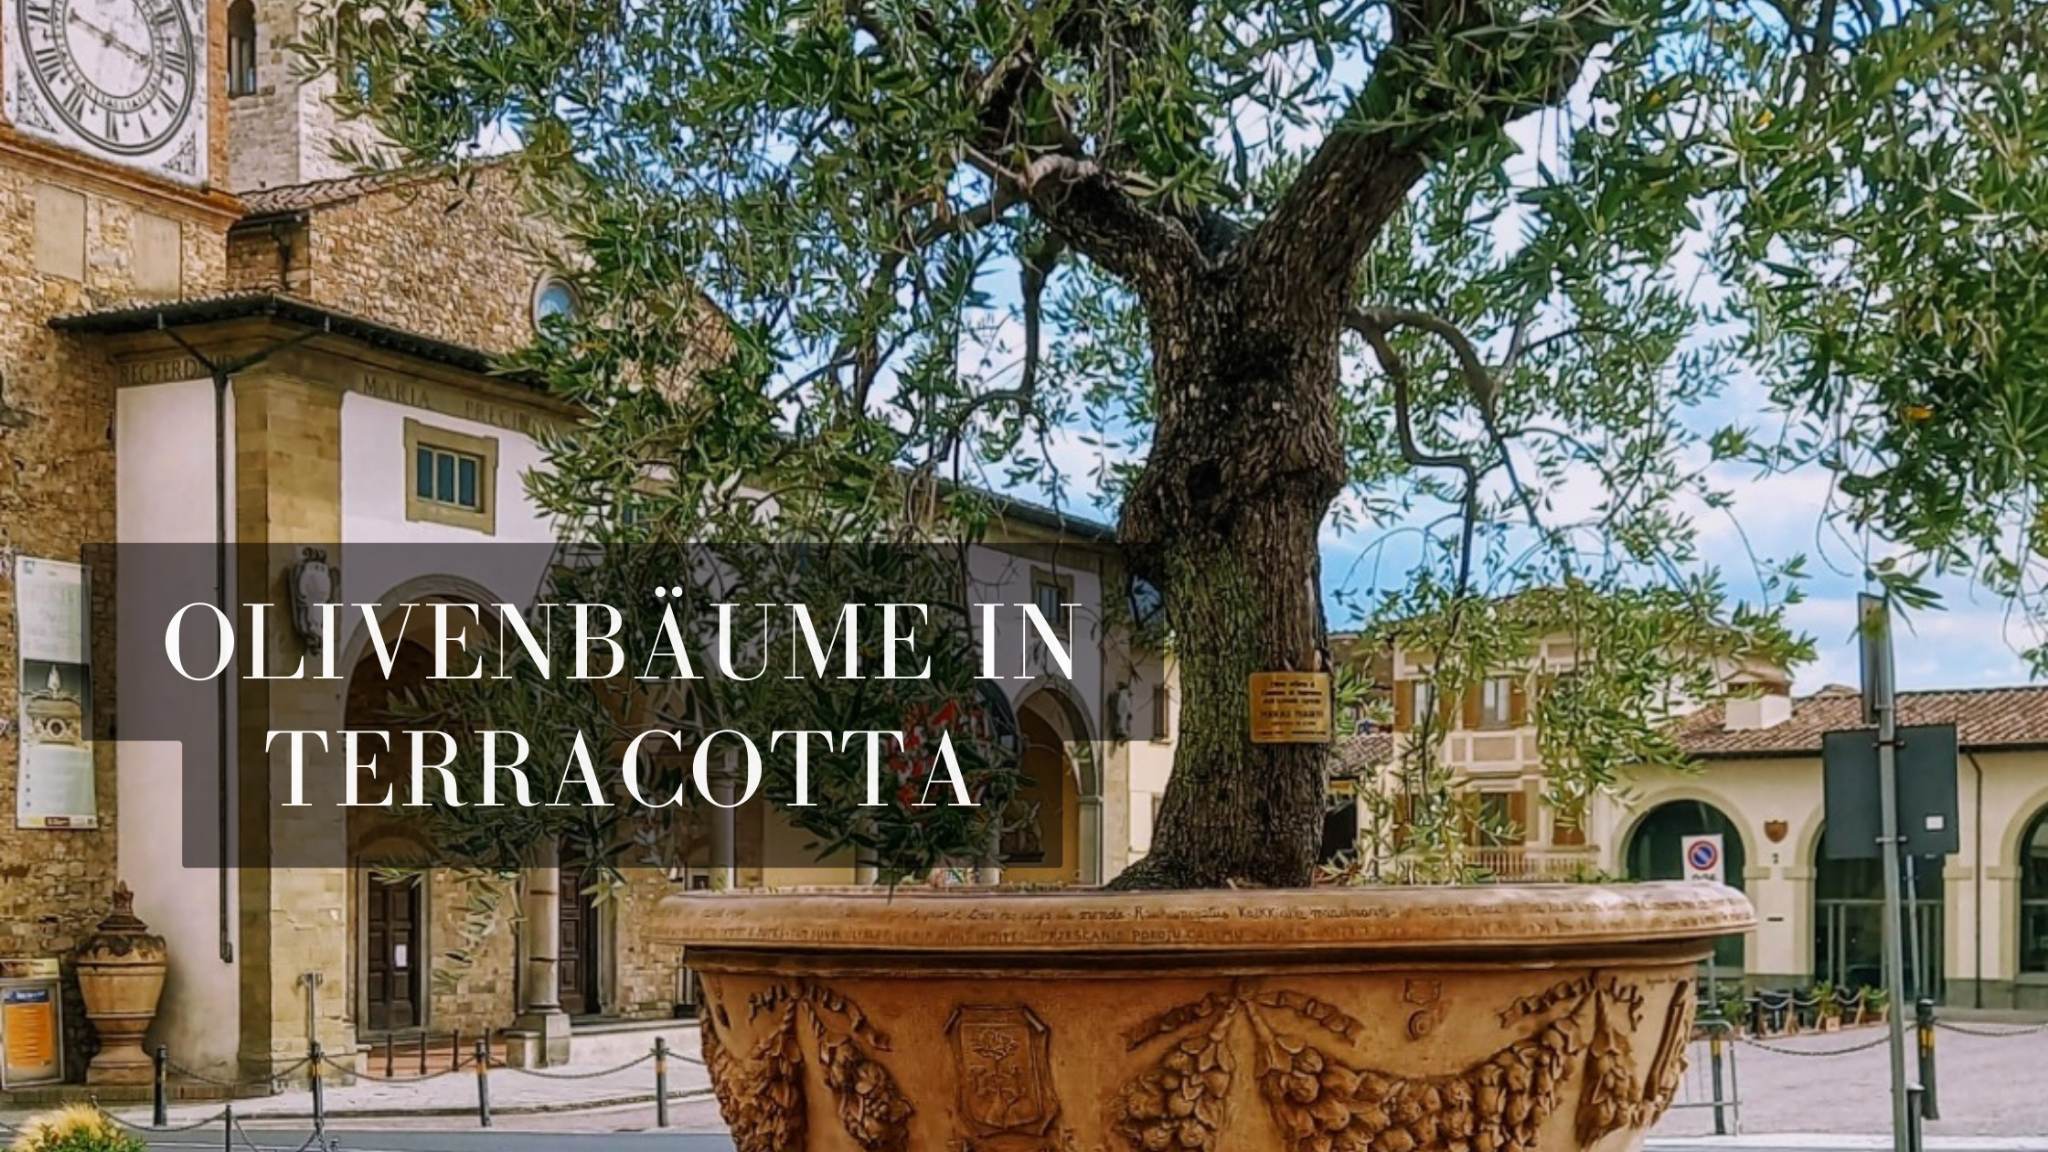 Anzeige: Der Olivenbaum – Pflege im Terracotta-Pflanztopf